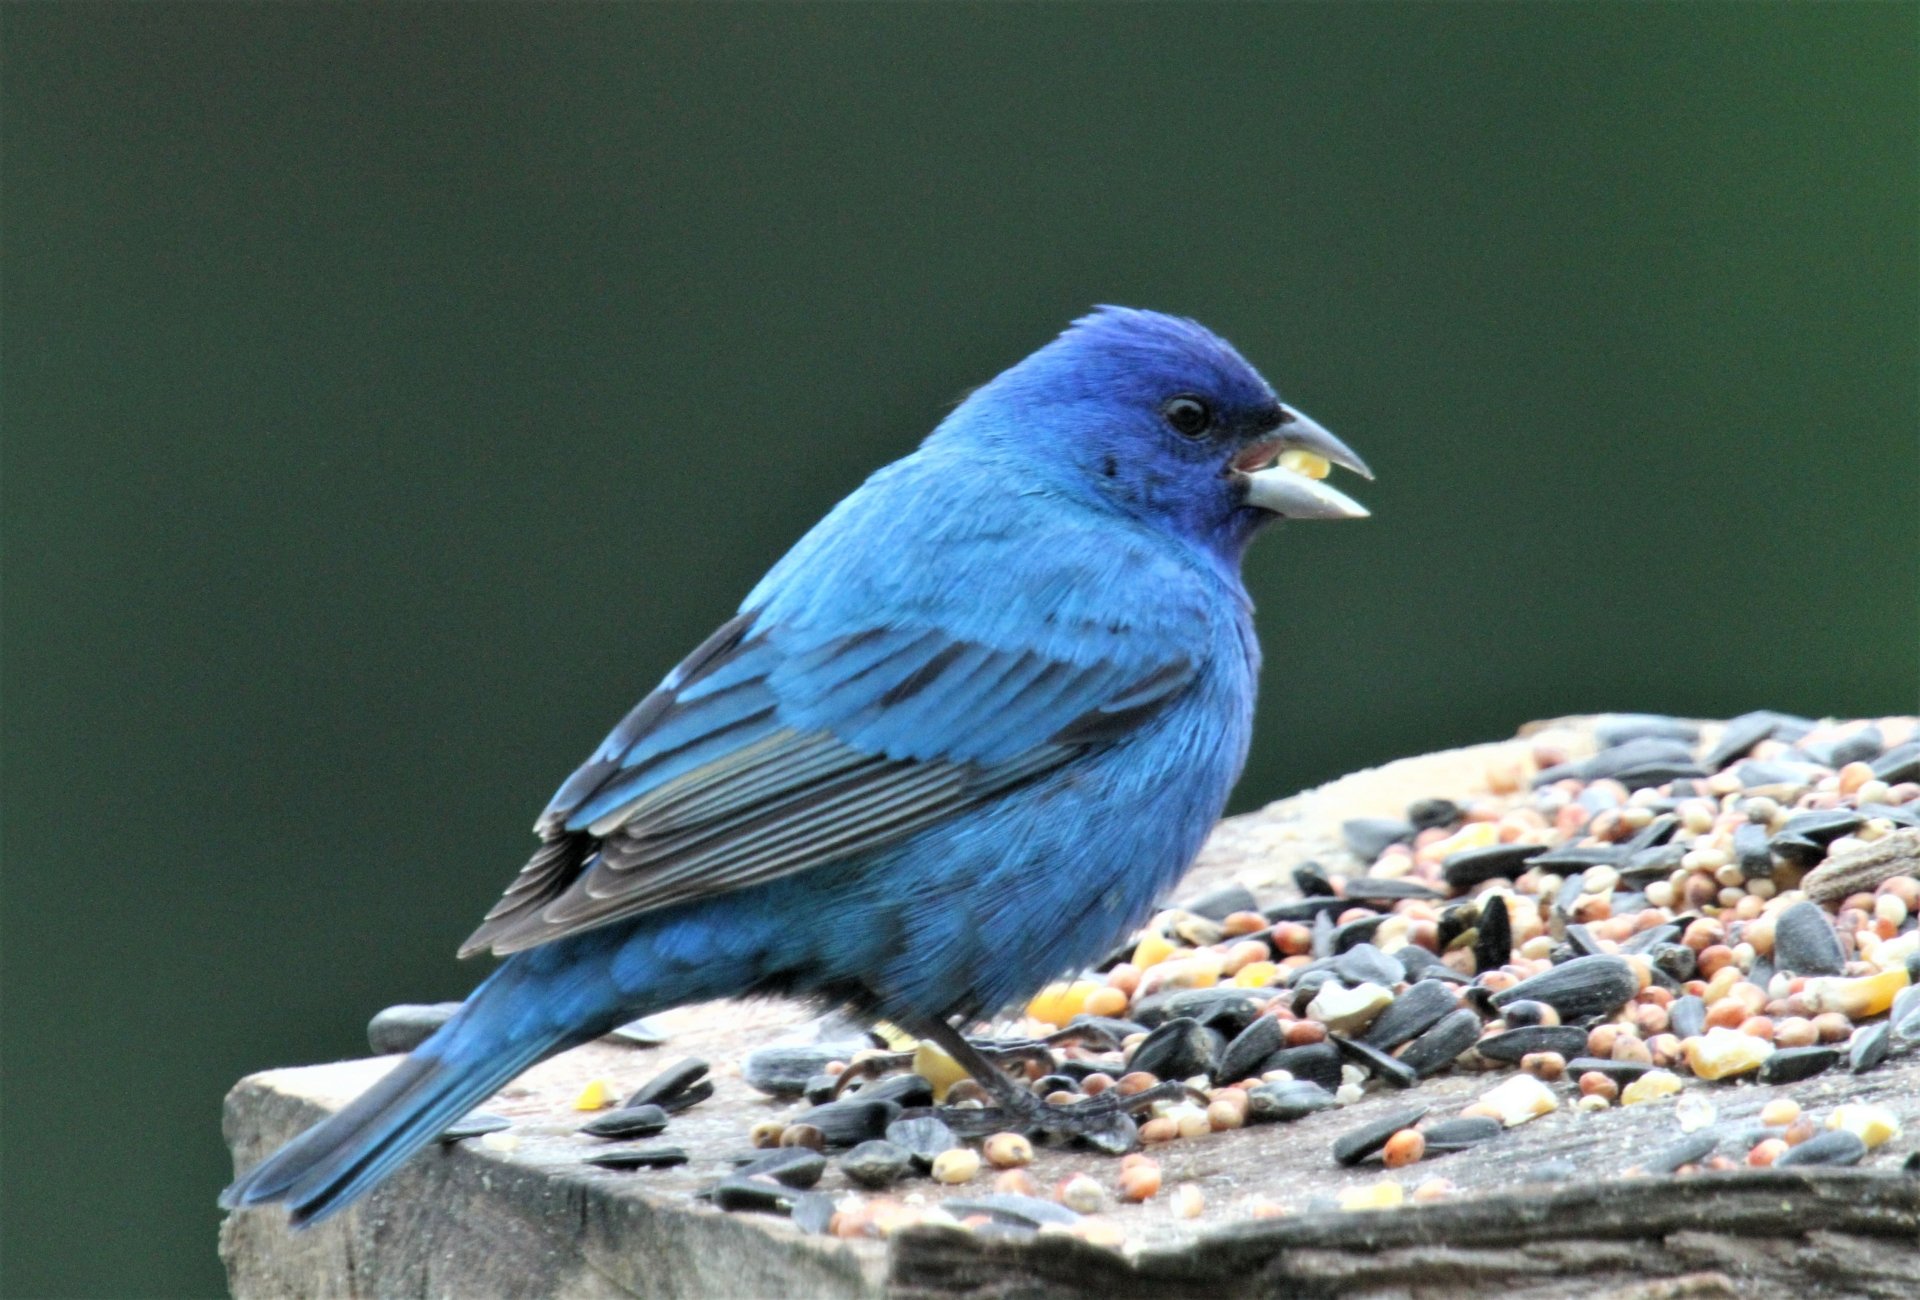 indigo blue bunting bird